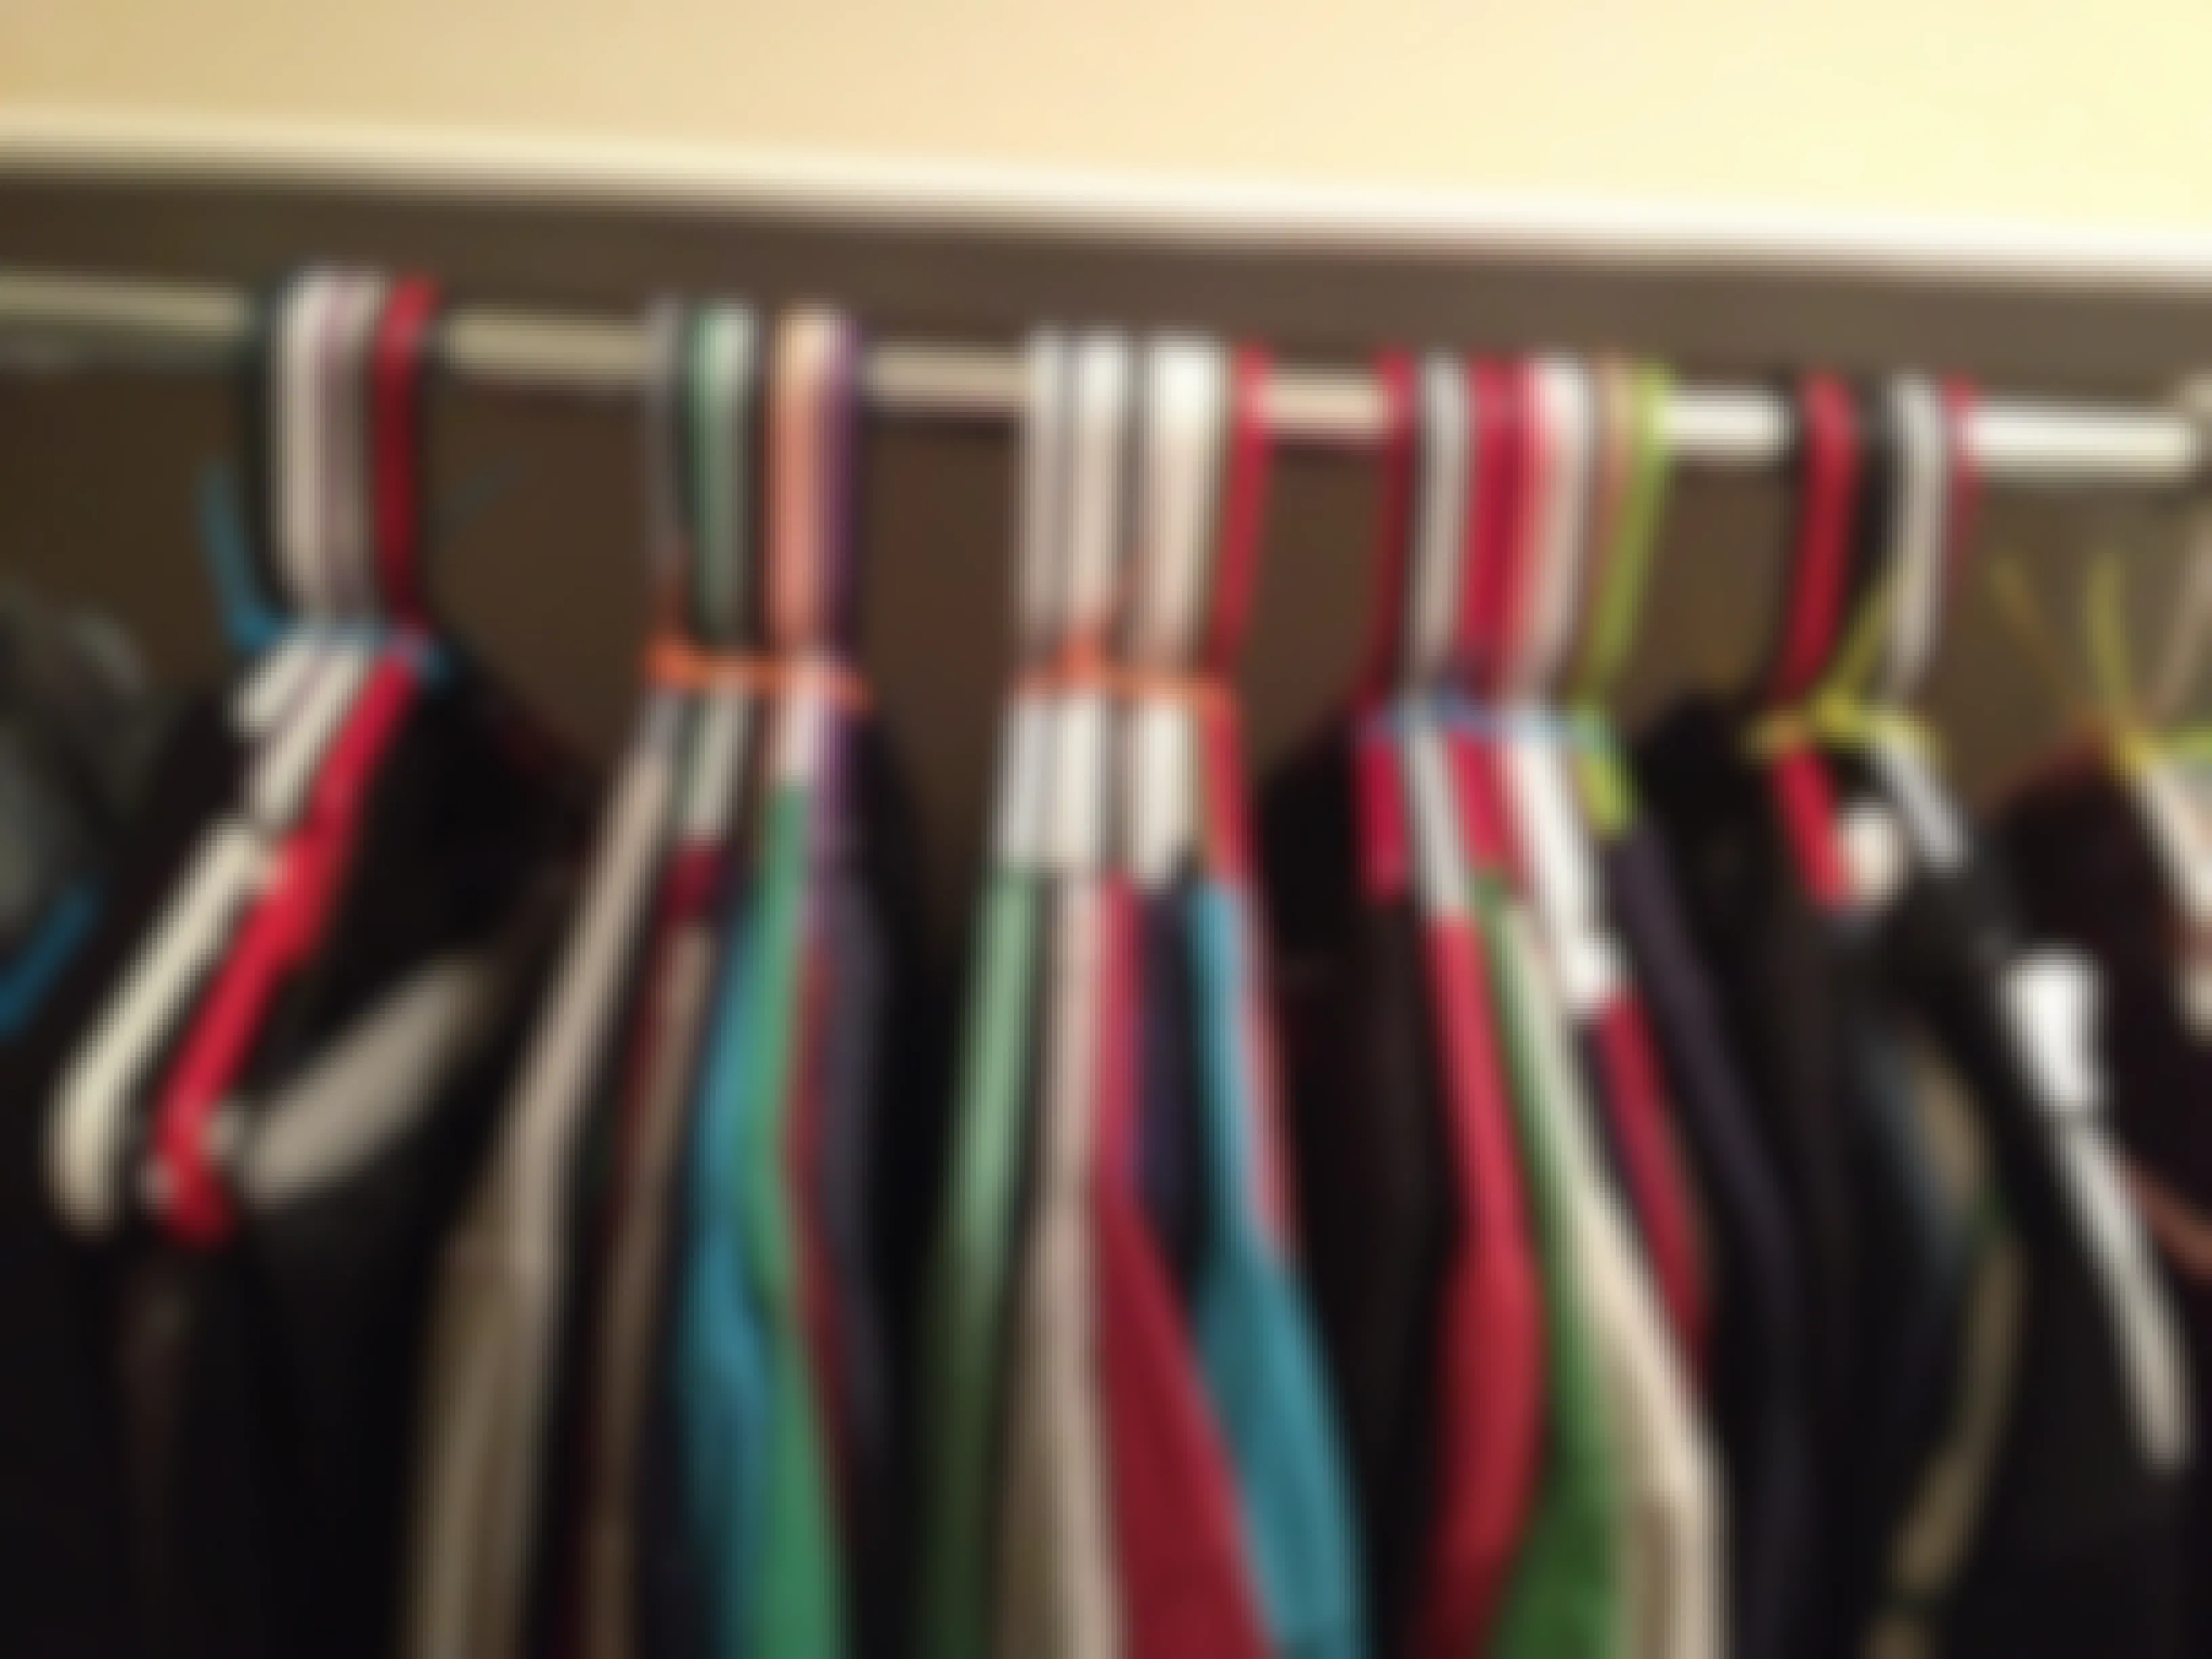 Zip tie hangers together when moving.